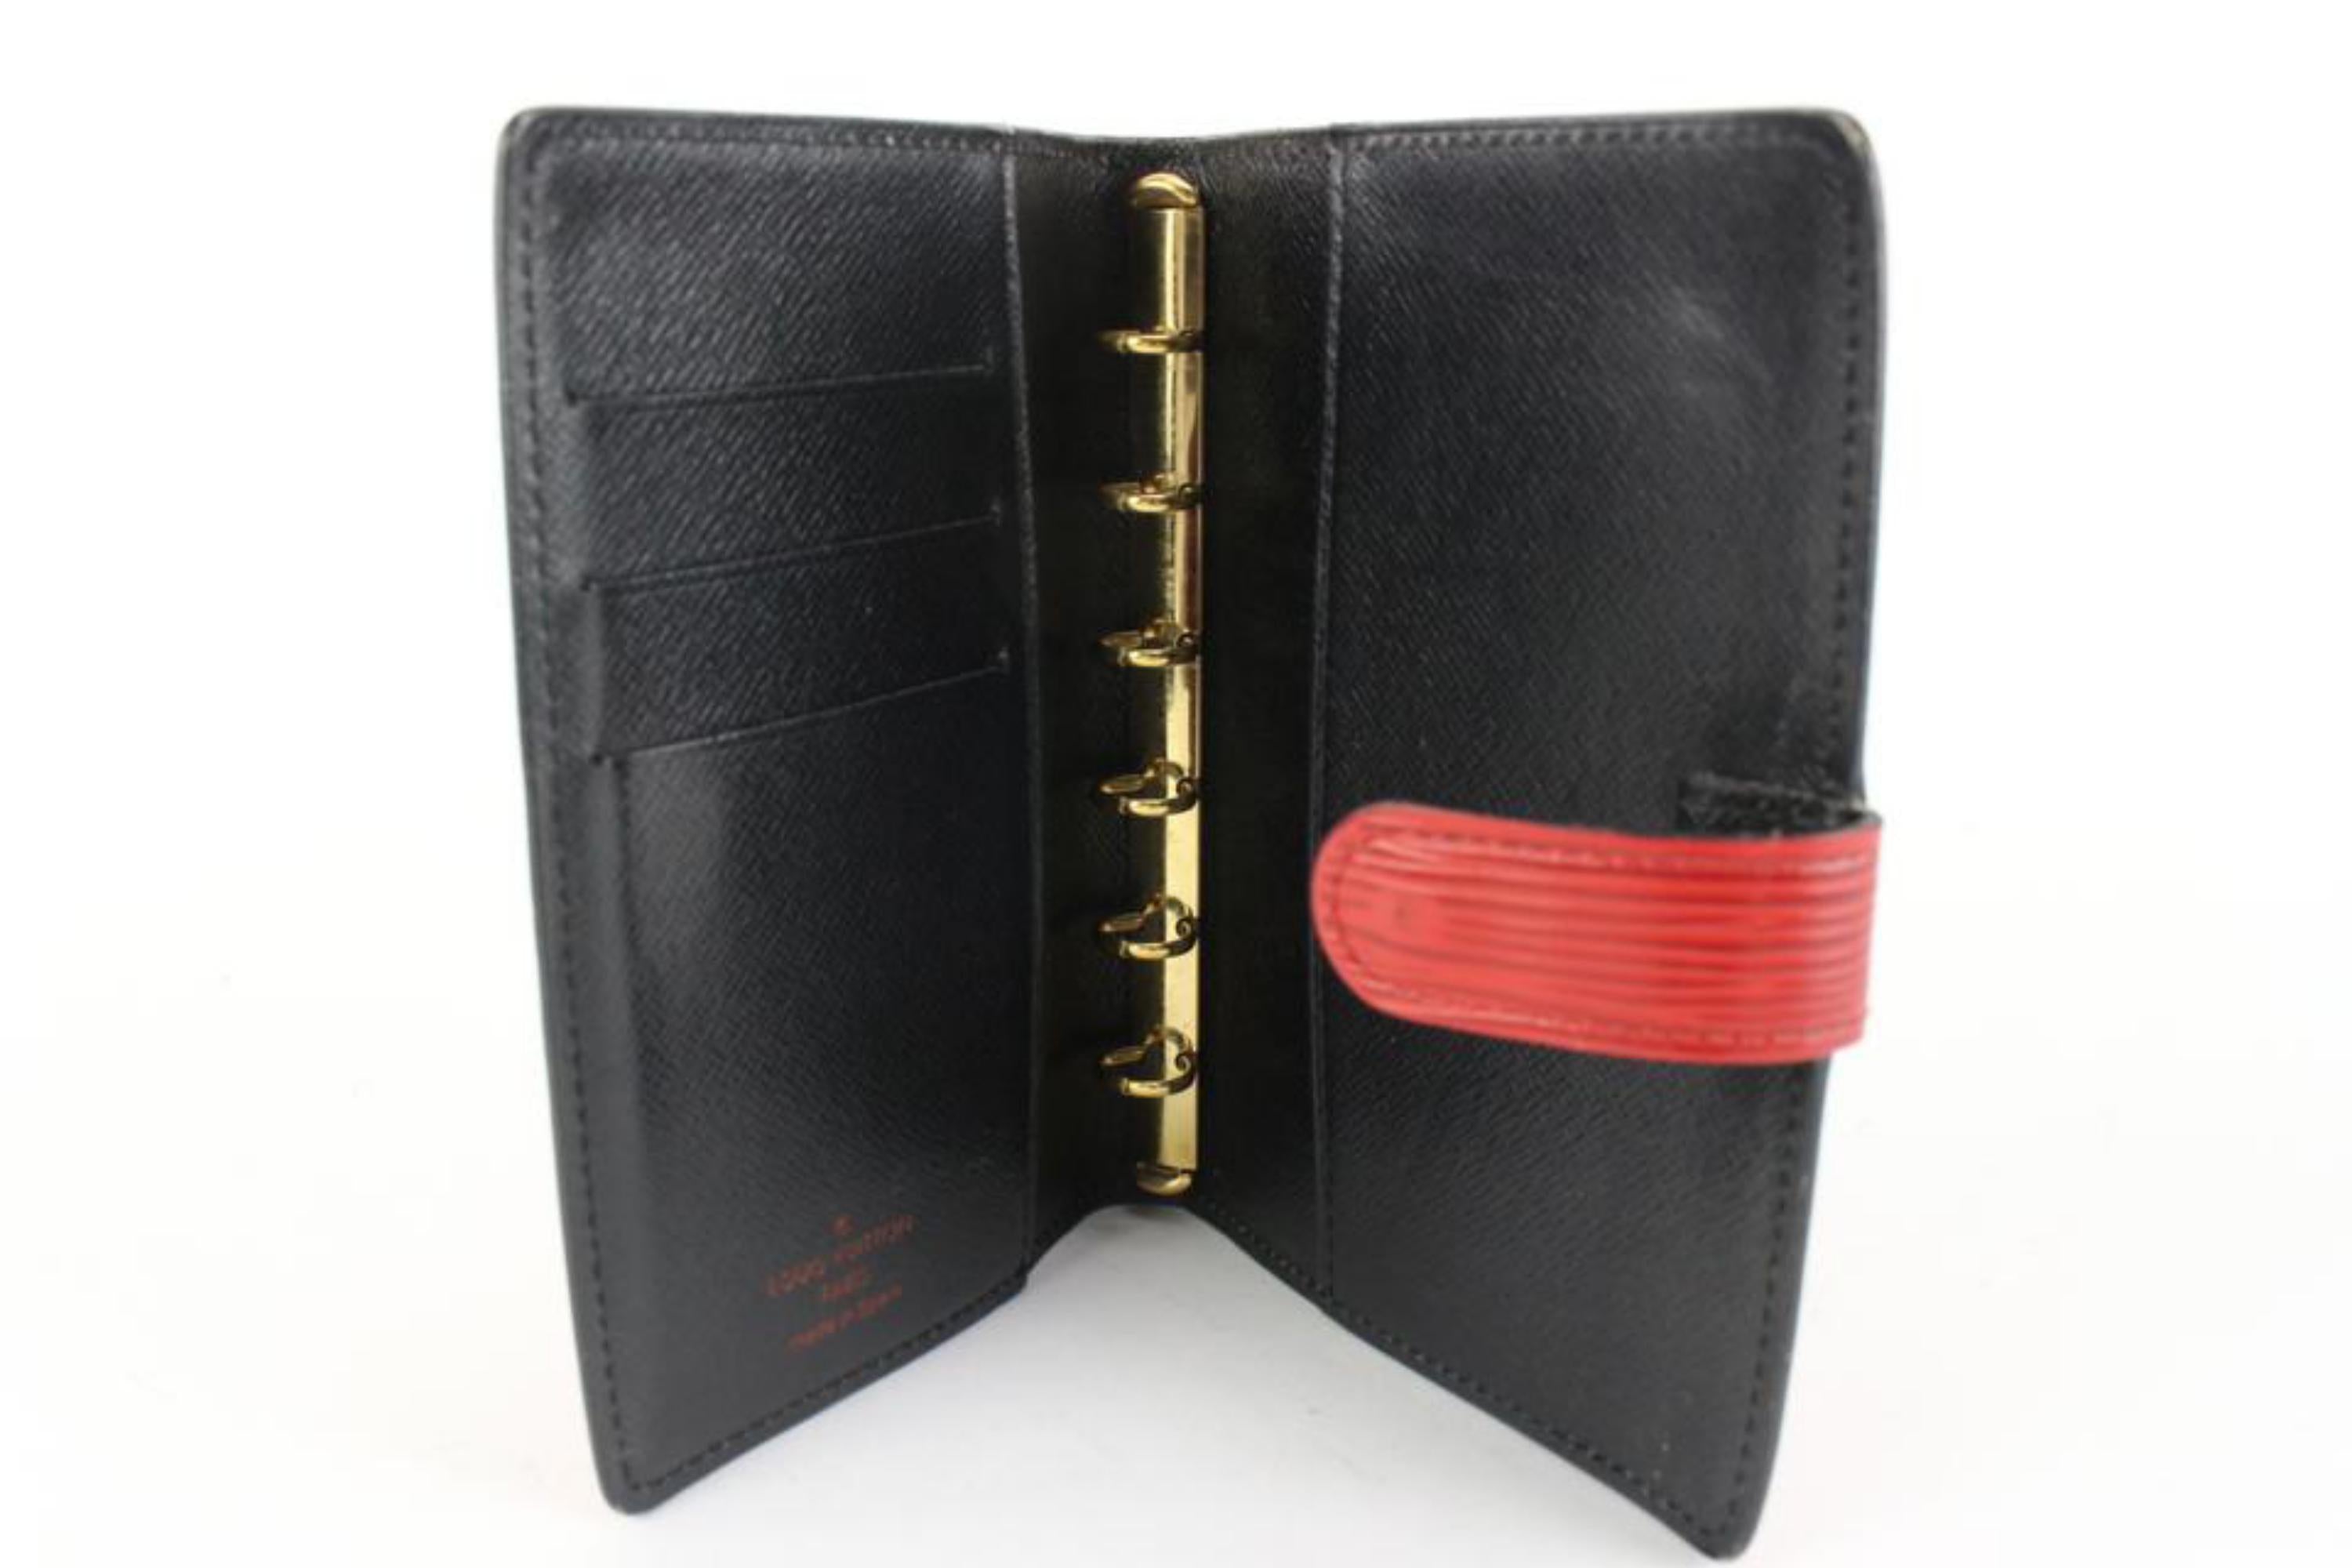 EPI Leather Pocket Agenda Wallet